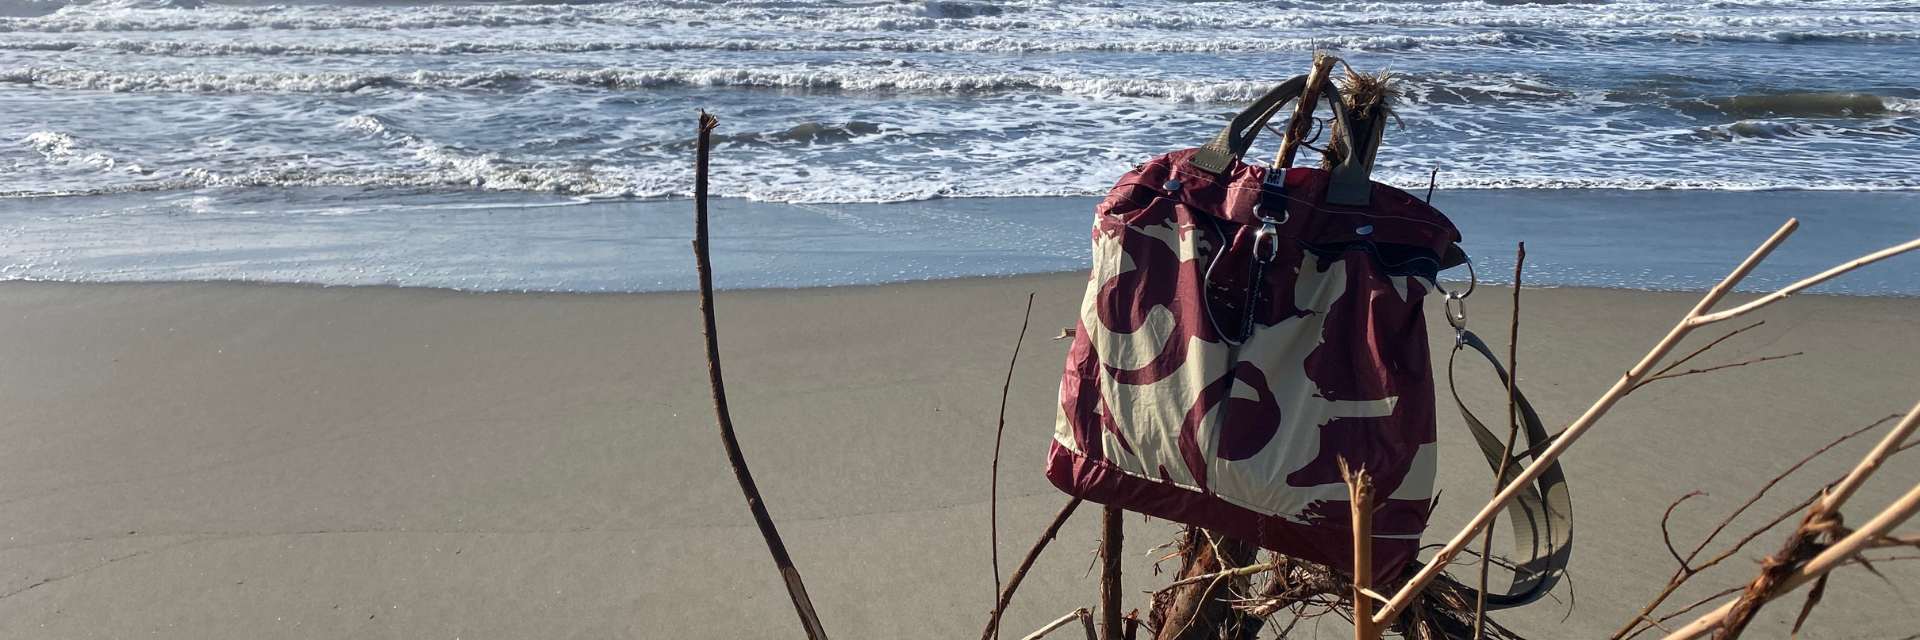 borsa a tracolla colore burgundy modello porta casco areonautica militare appoggiata su un ramo sulla spiaggia, mare sullo sfondo